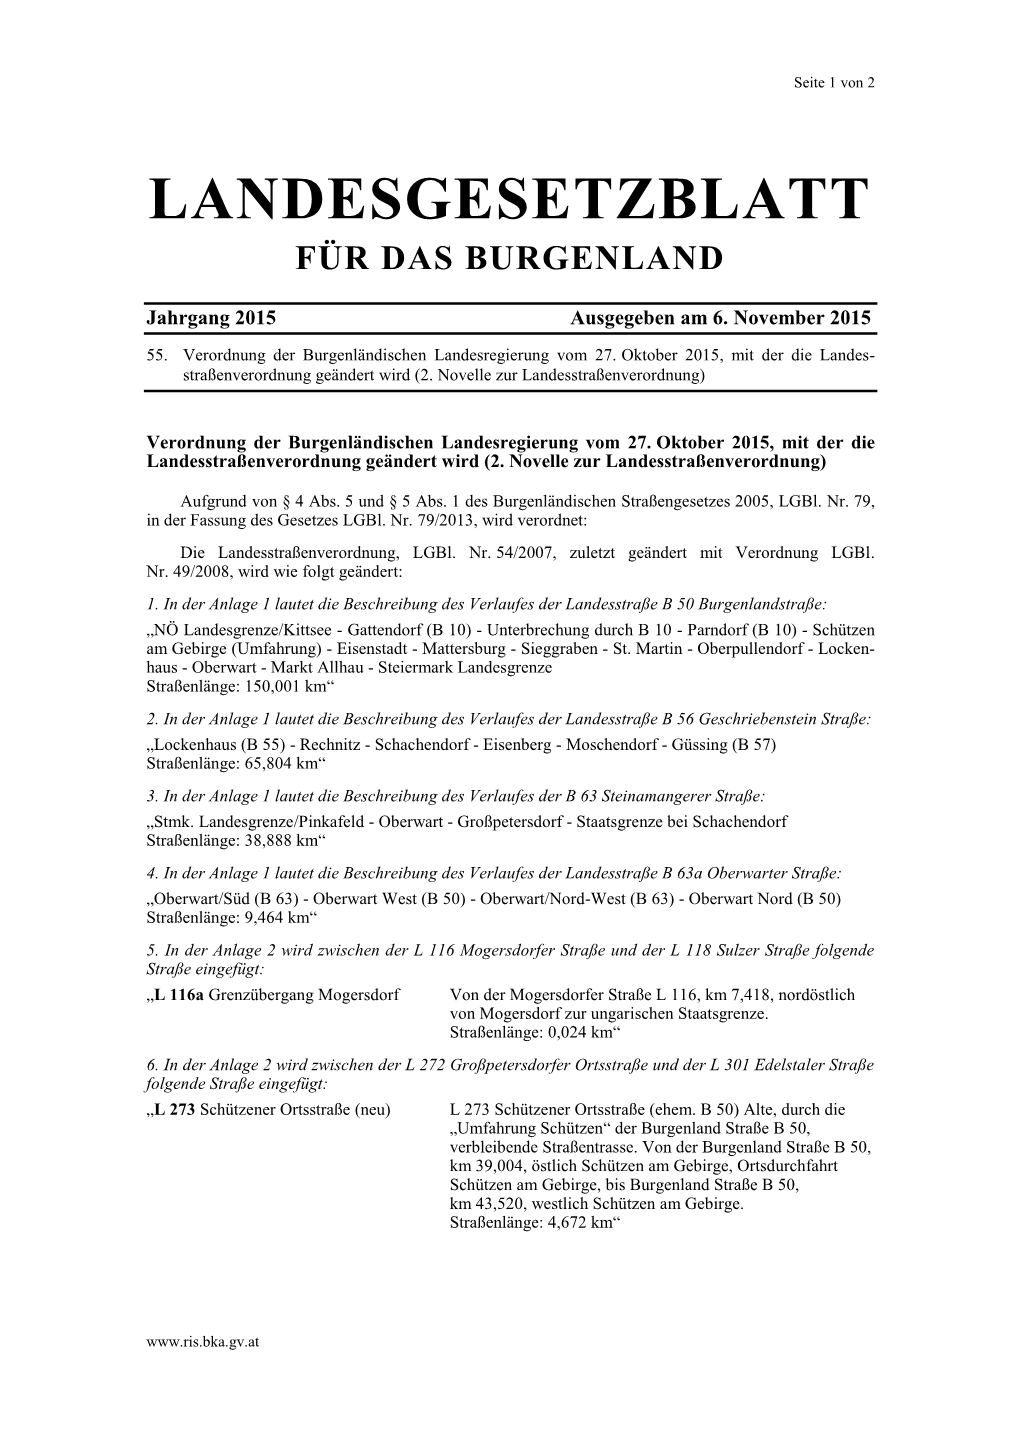 Landesgesetzblatt Für Das Burgenland